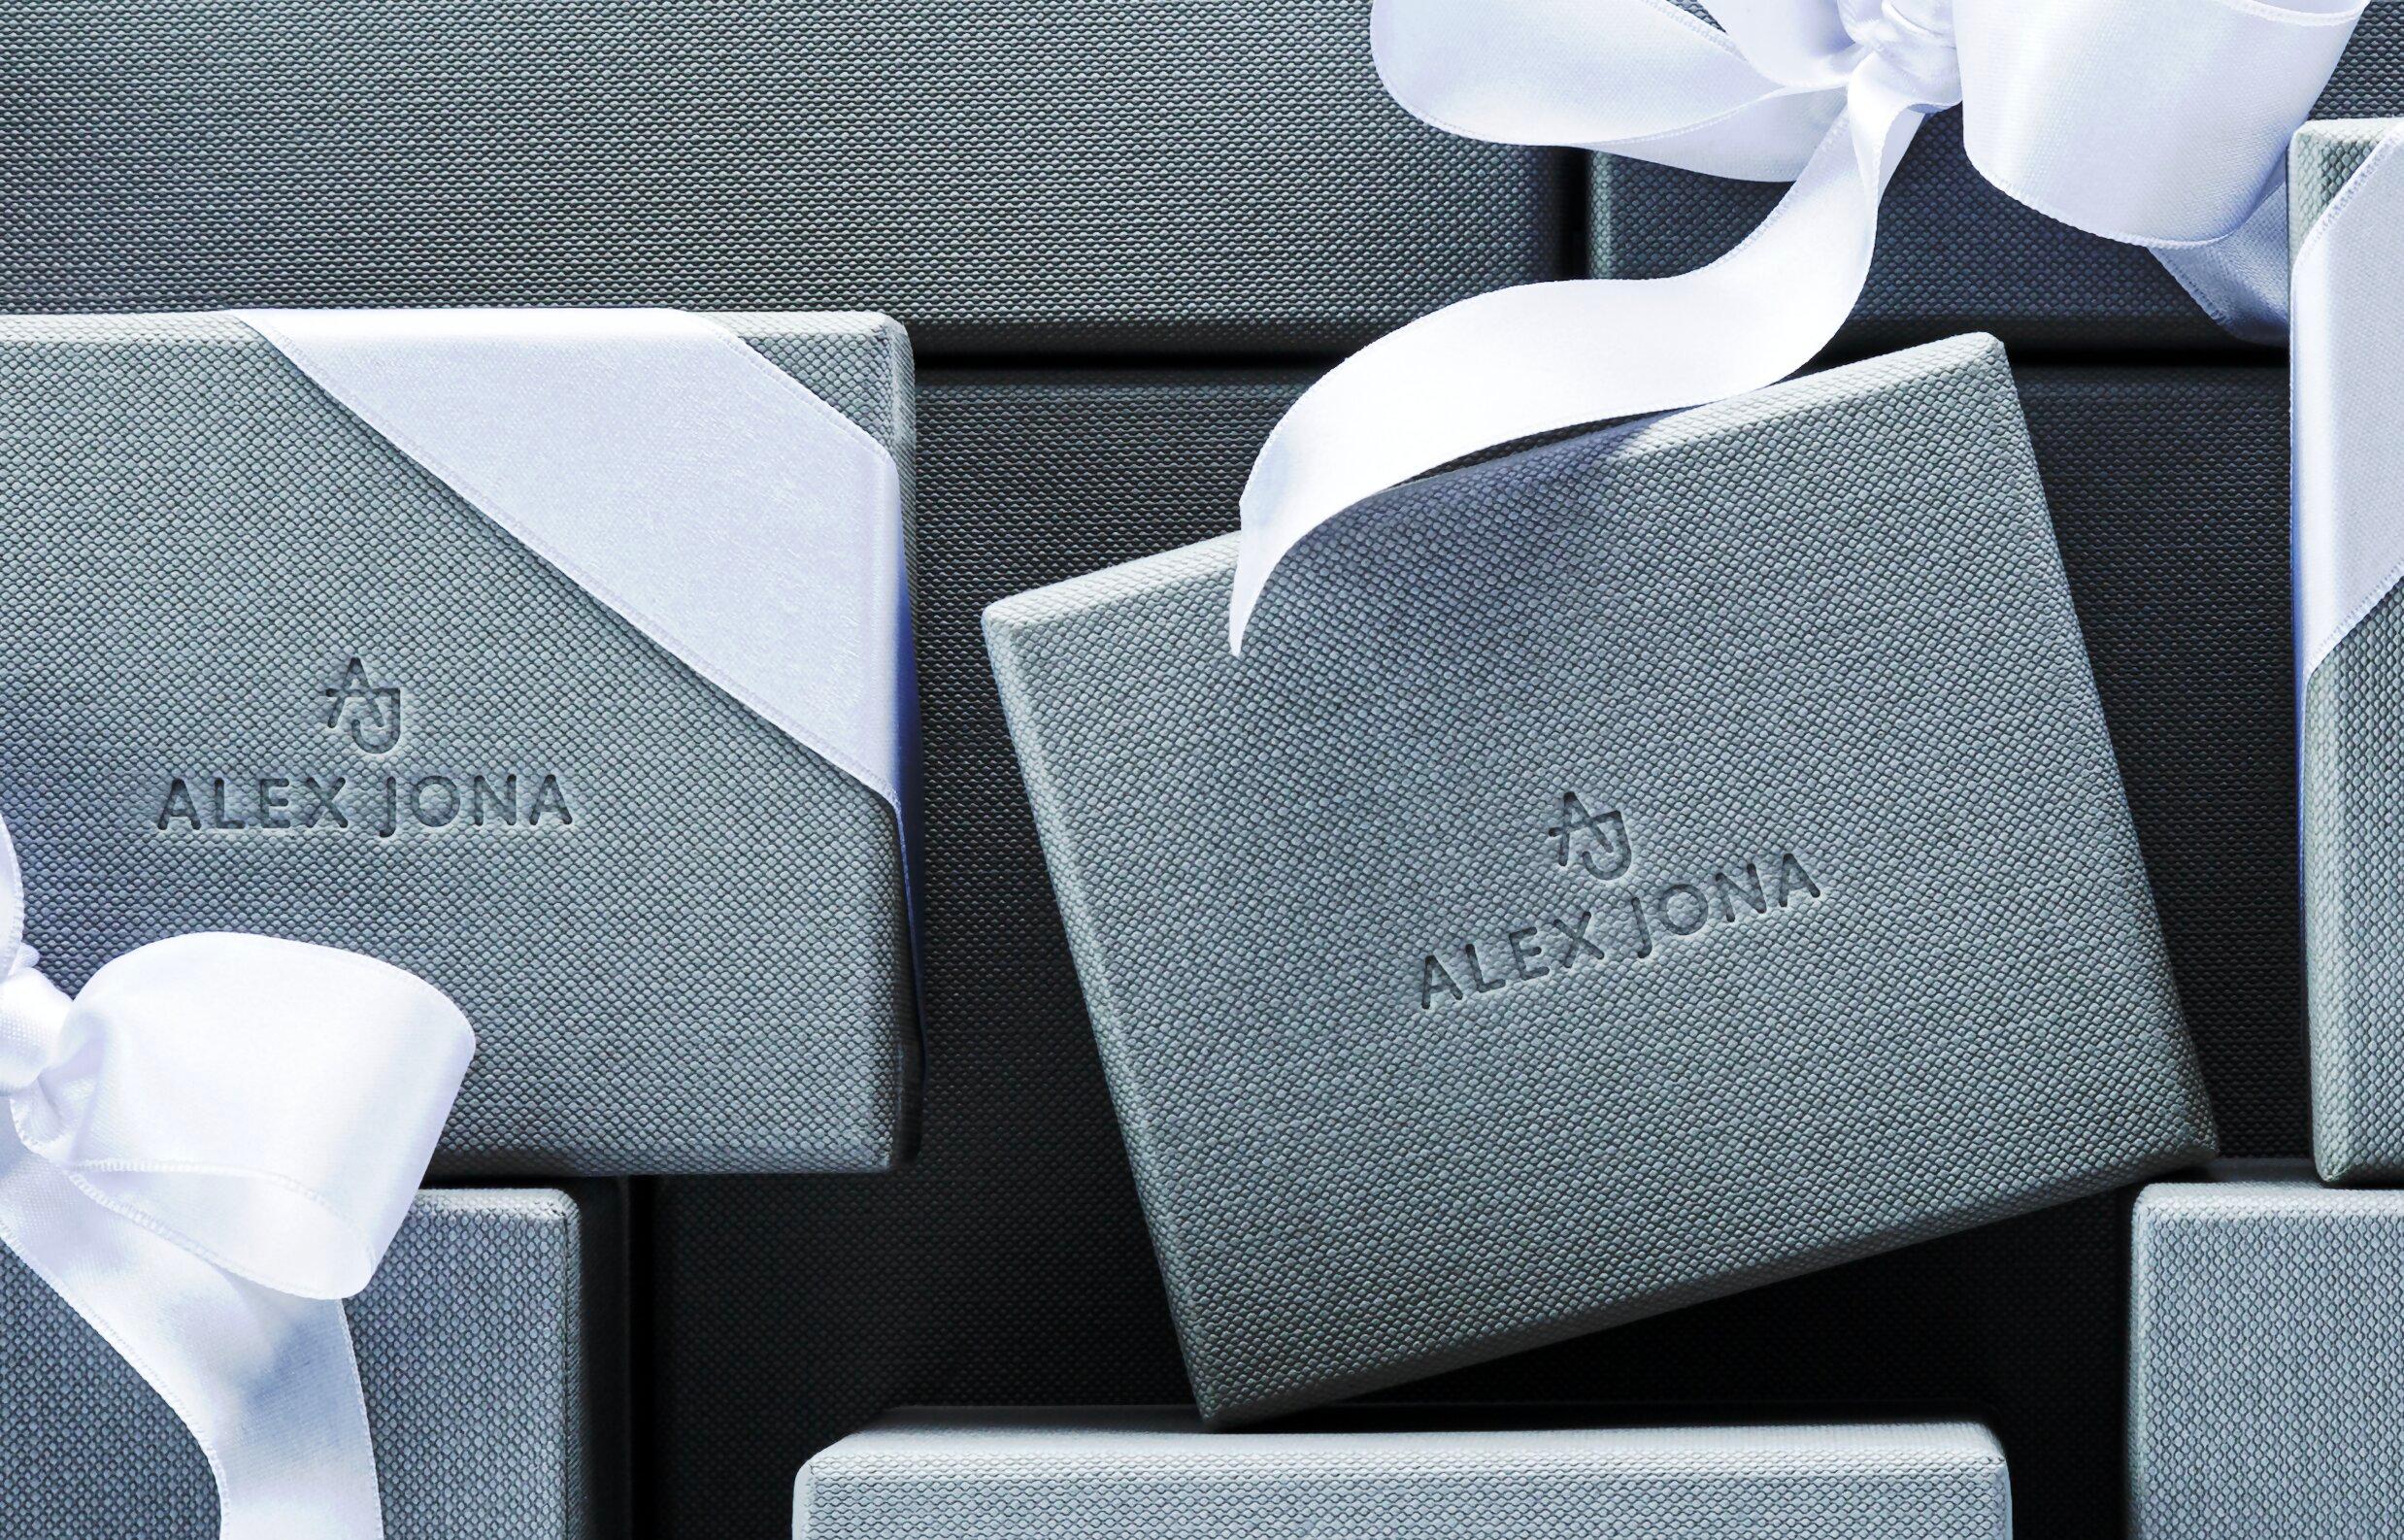 Alex Jona Modernist Semi Precious Stone Sterling Silver Cufflinks In New Condition For Sale In Torino, IT